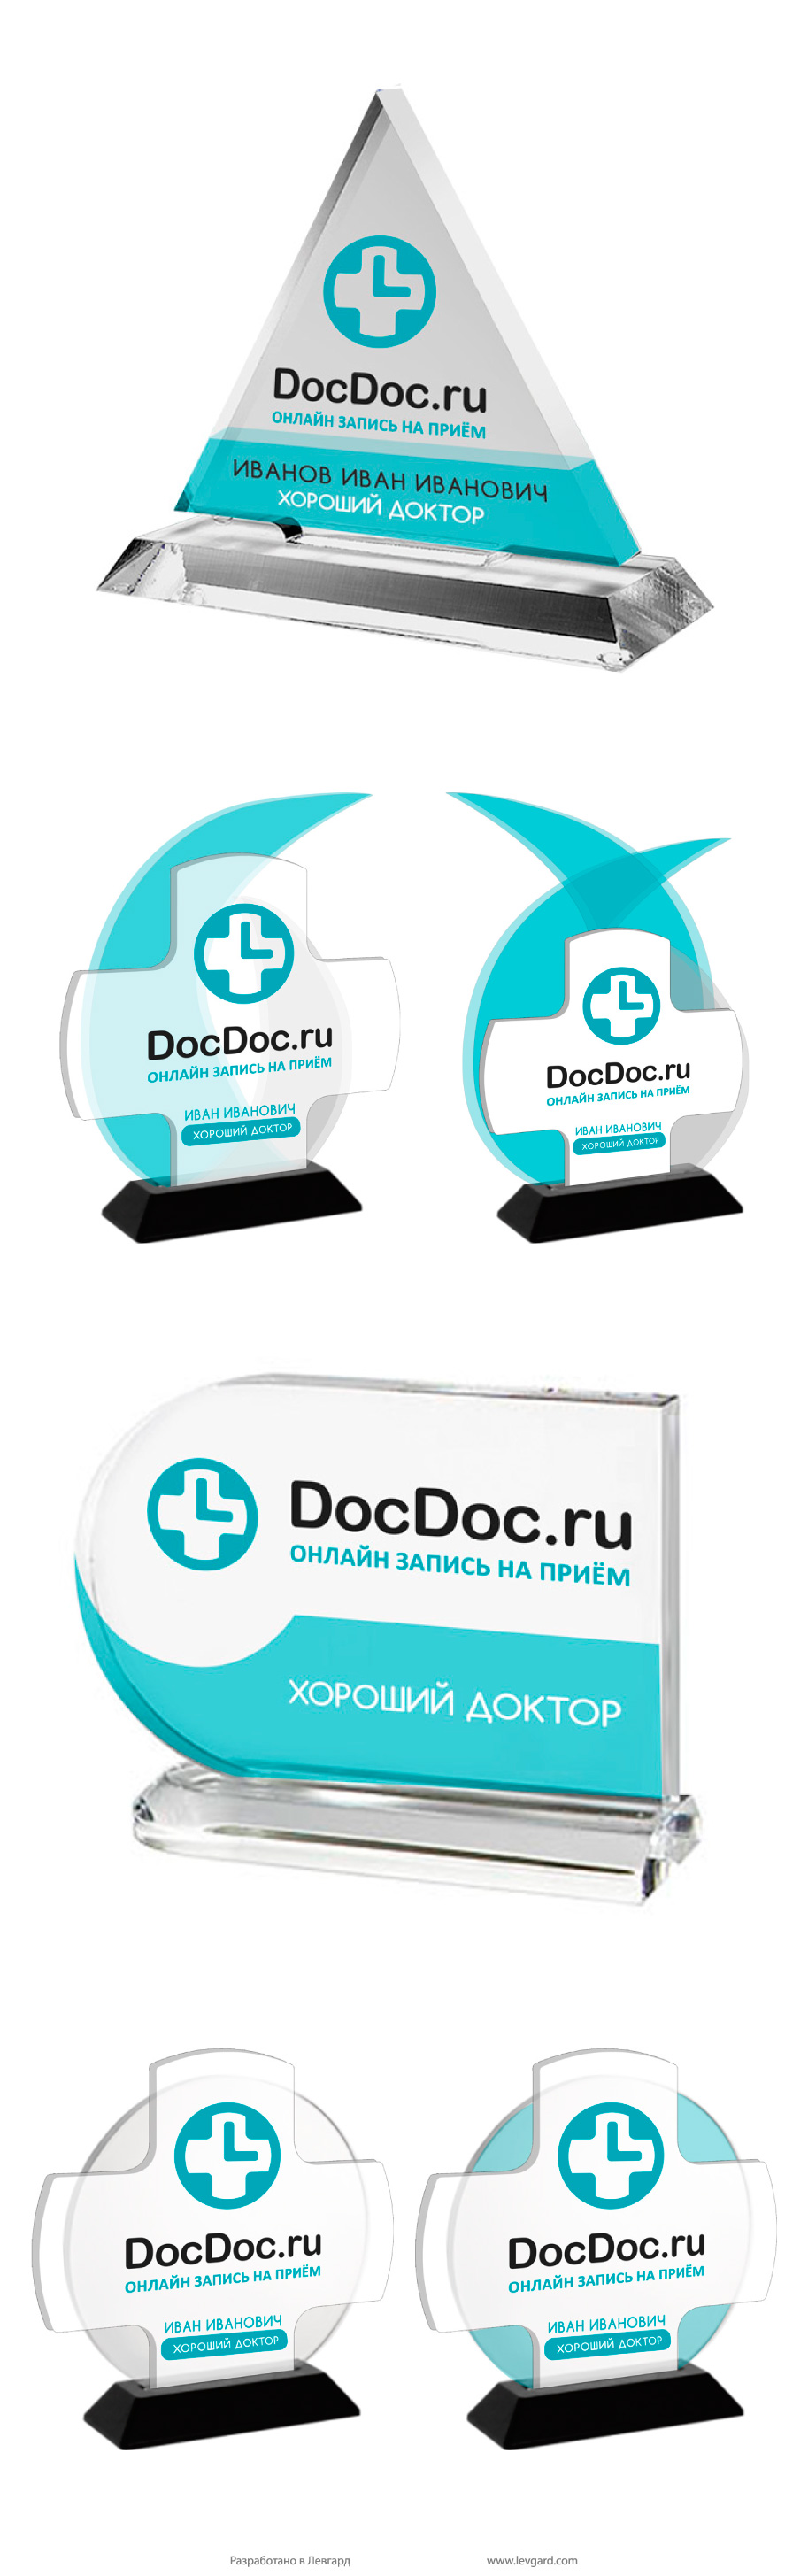 Разработка концепции сувенирной продукции для сервиса docdoc.ru